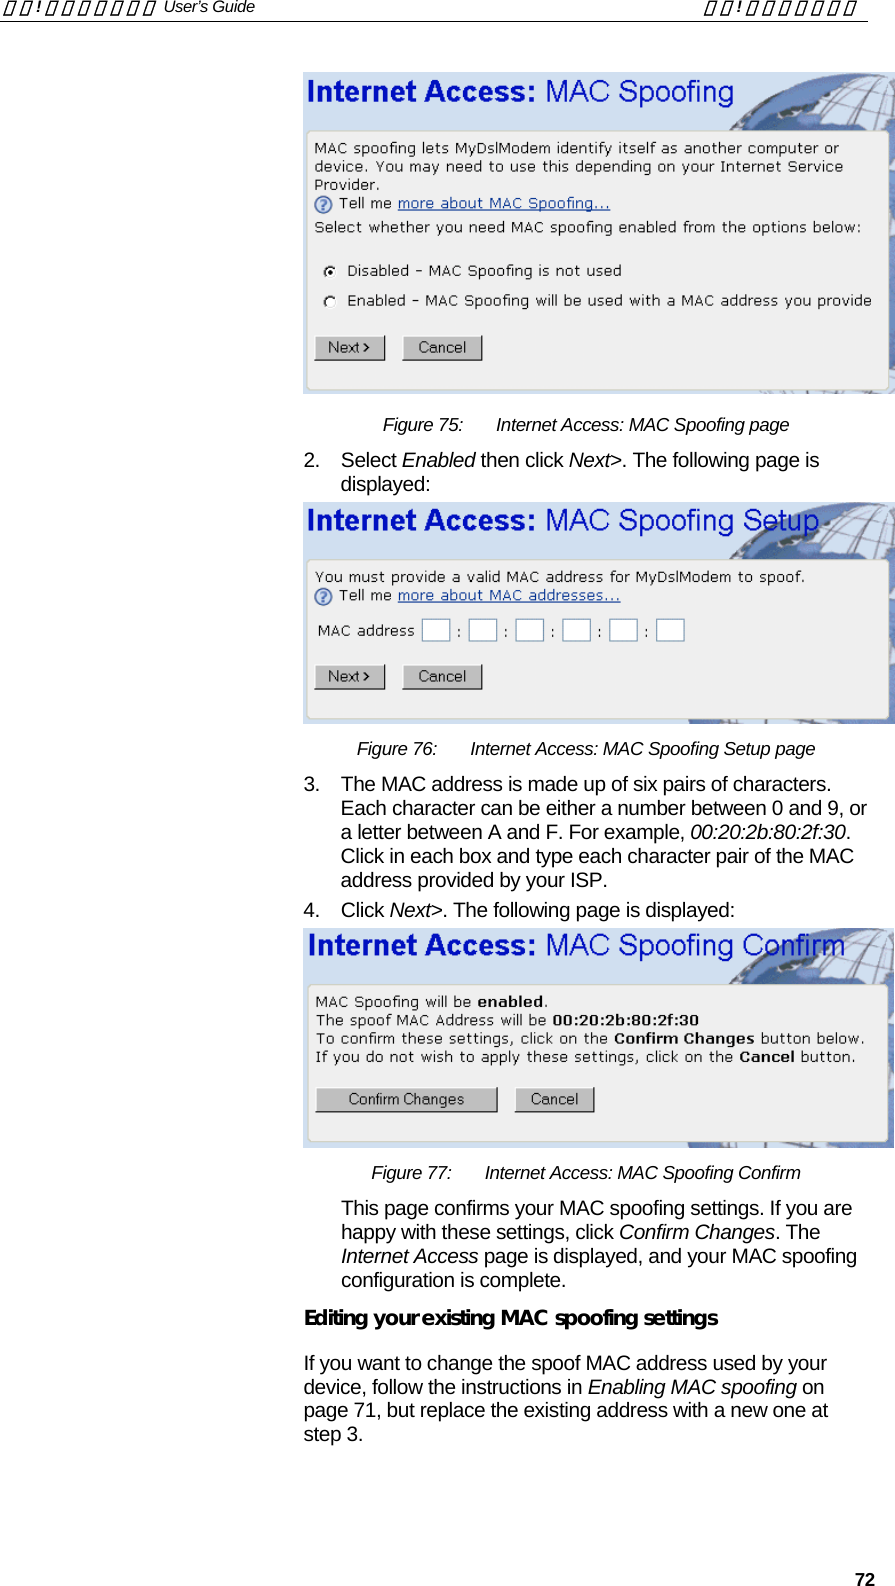 錯誤! 尚未定義樣式。 User’s Guide  錯誤! 尚未定義樣式。   72  Figure 75:  Internet Access: MAC Spoofing page 2. Select Enabled then click Next&gt;. The following page is displayed:  Figure 76:  Internet Access: MAC Spoofing Setup page 3.  The MAC address is made up of six pairs of characters. Each character can be either a number between 0 and 9, or a letter between A and F. For example, 00:20:2b:80:2f:30.  Click in each box and type each character pair of the MAC address provided by your ISP.  4. Click Next&gt;. The following page is displayed:  Figure 77:  Internet Access: MAC Spoofing Confirm This page confirms your MAC spoofing settings. If you are happy with these settings, click Confirm Changes. The Internet Access page is displayed, and your MAC spoofing configuration is complete. Editing your existing MAC spoofing settings If you want to change the spoof MAC address used by your device, follow the instructions in Enabling MAC spoofing on page 71, but replace the existing address with a new one at step 3. 